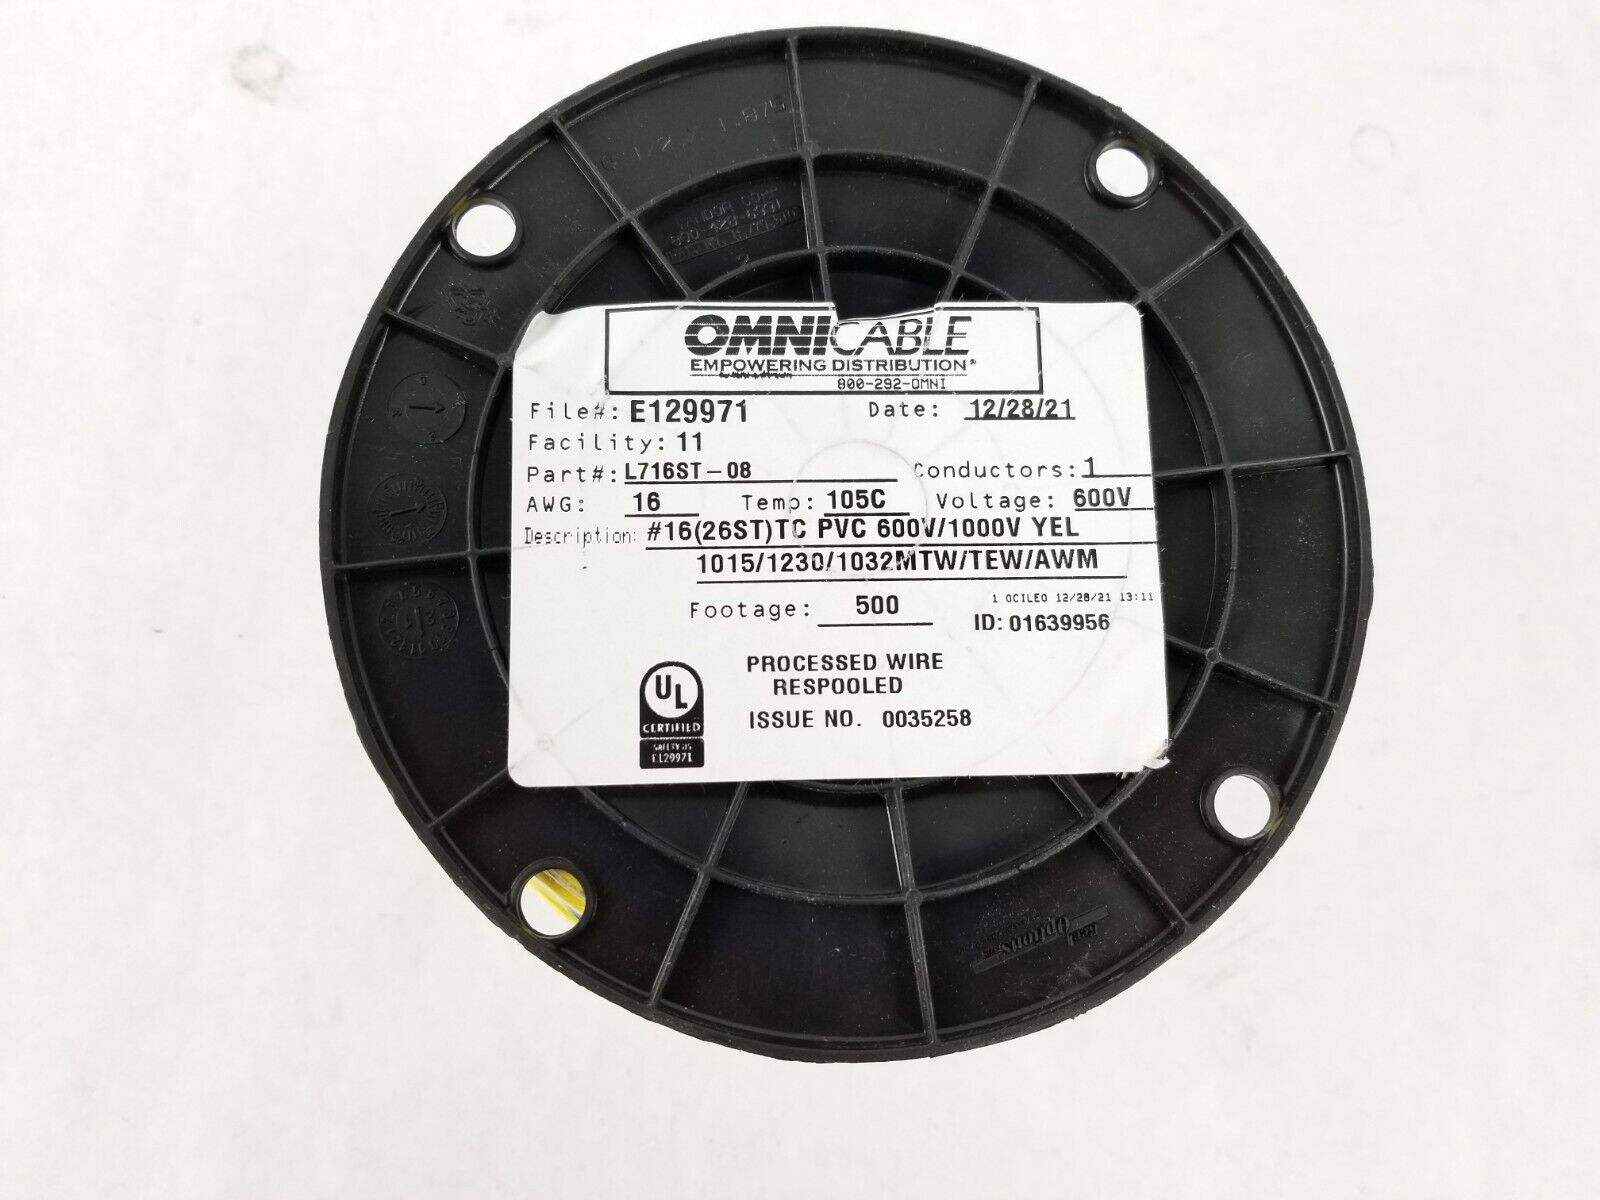 Omni Cable L716ST-08  16(26ST)TC PVC 600V/1000V Yellow 1015 / 1230 / 1032  500FT